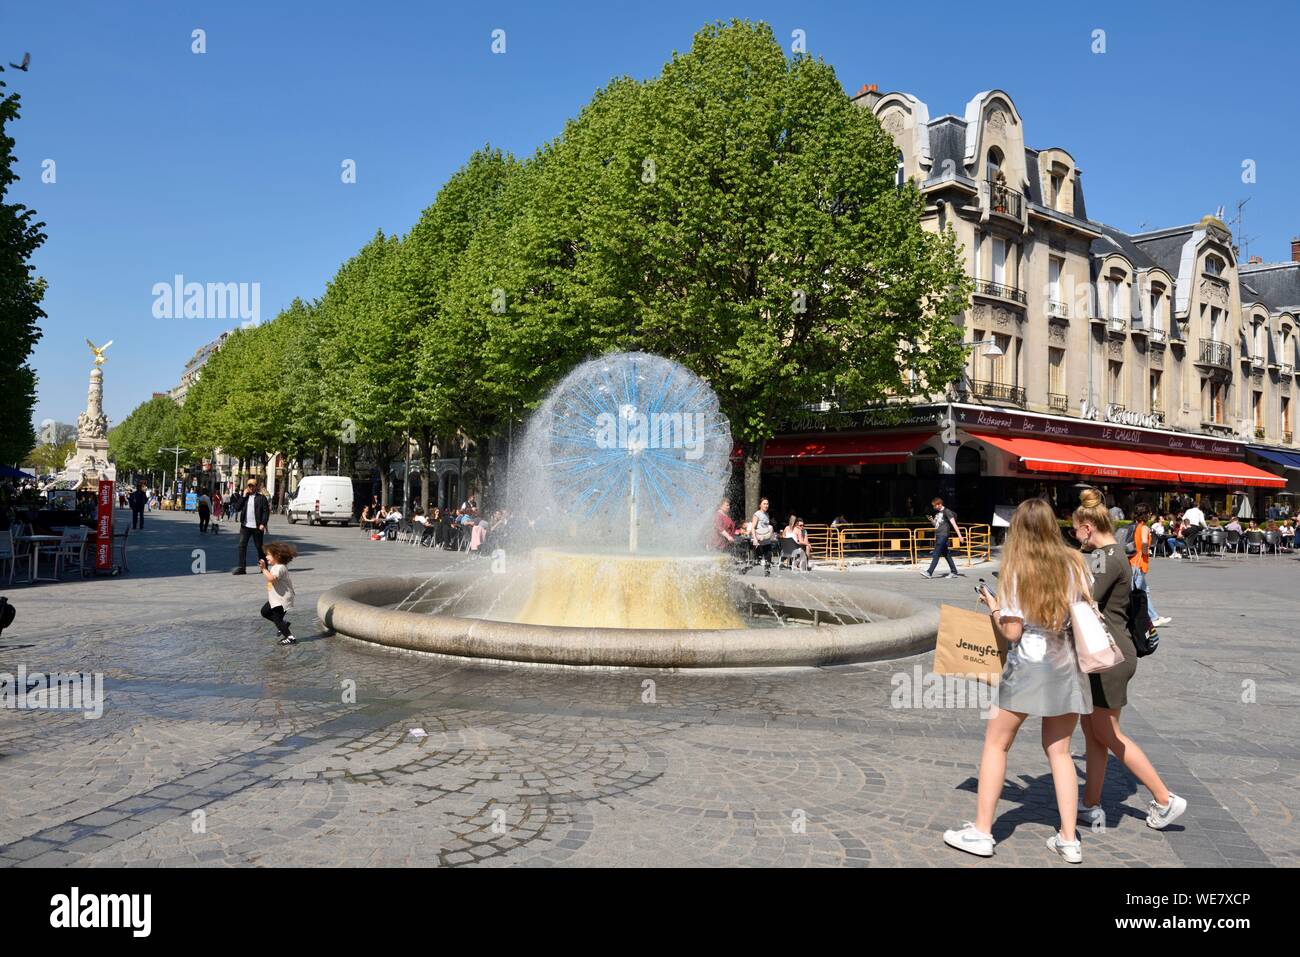 Francia, Marne, Reims, Place Drouet d'Erlon, fuente de solidaridad, dos niñas caminando hacia la fuente Foto de stock